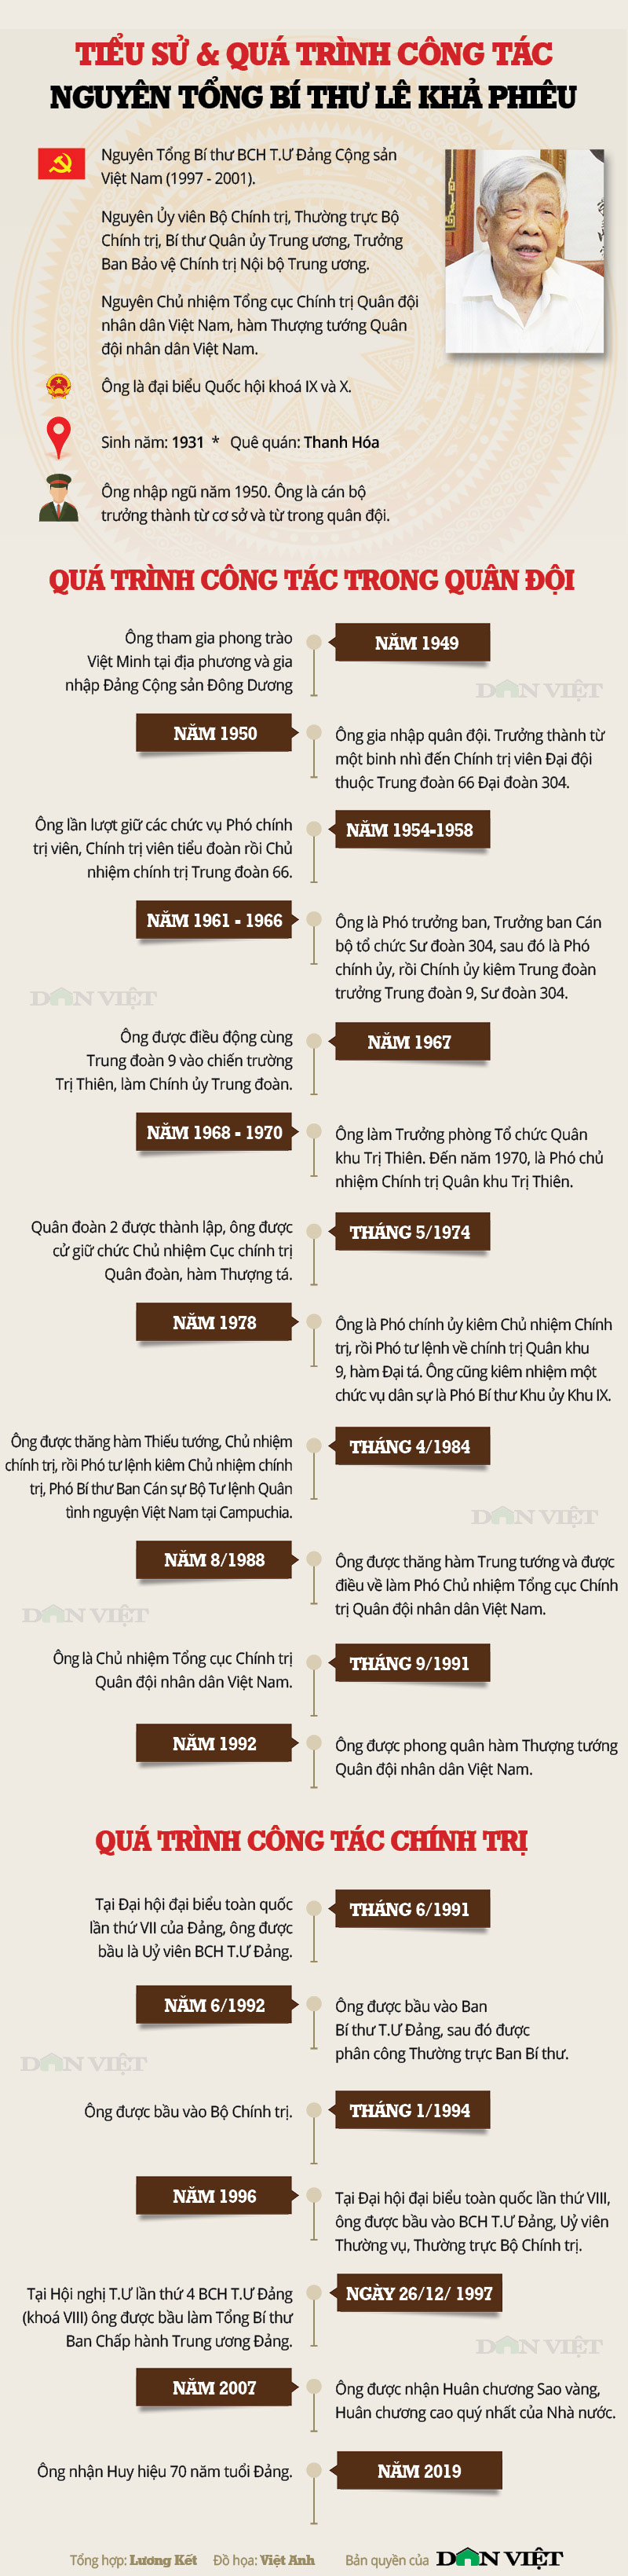 Infographic về tiểu sử và quá trình công tác của nguyên Tổng Bí thư Lê Khả Phiêu - Ảnh 1.